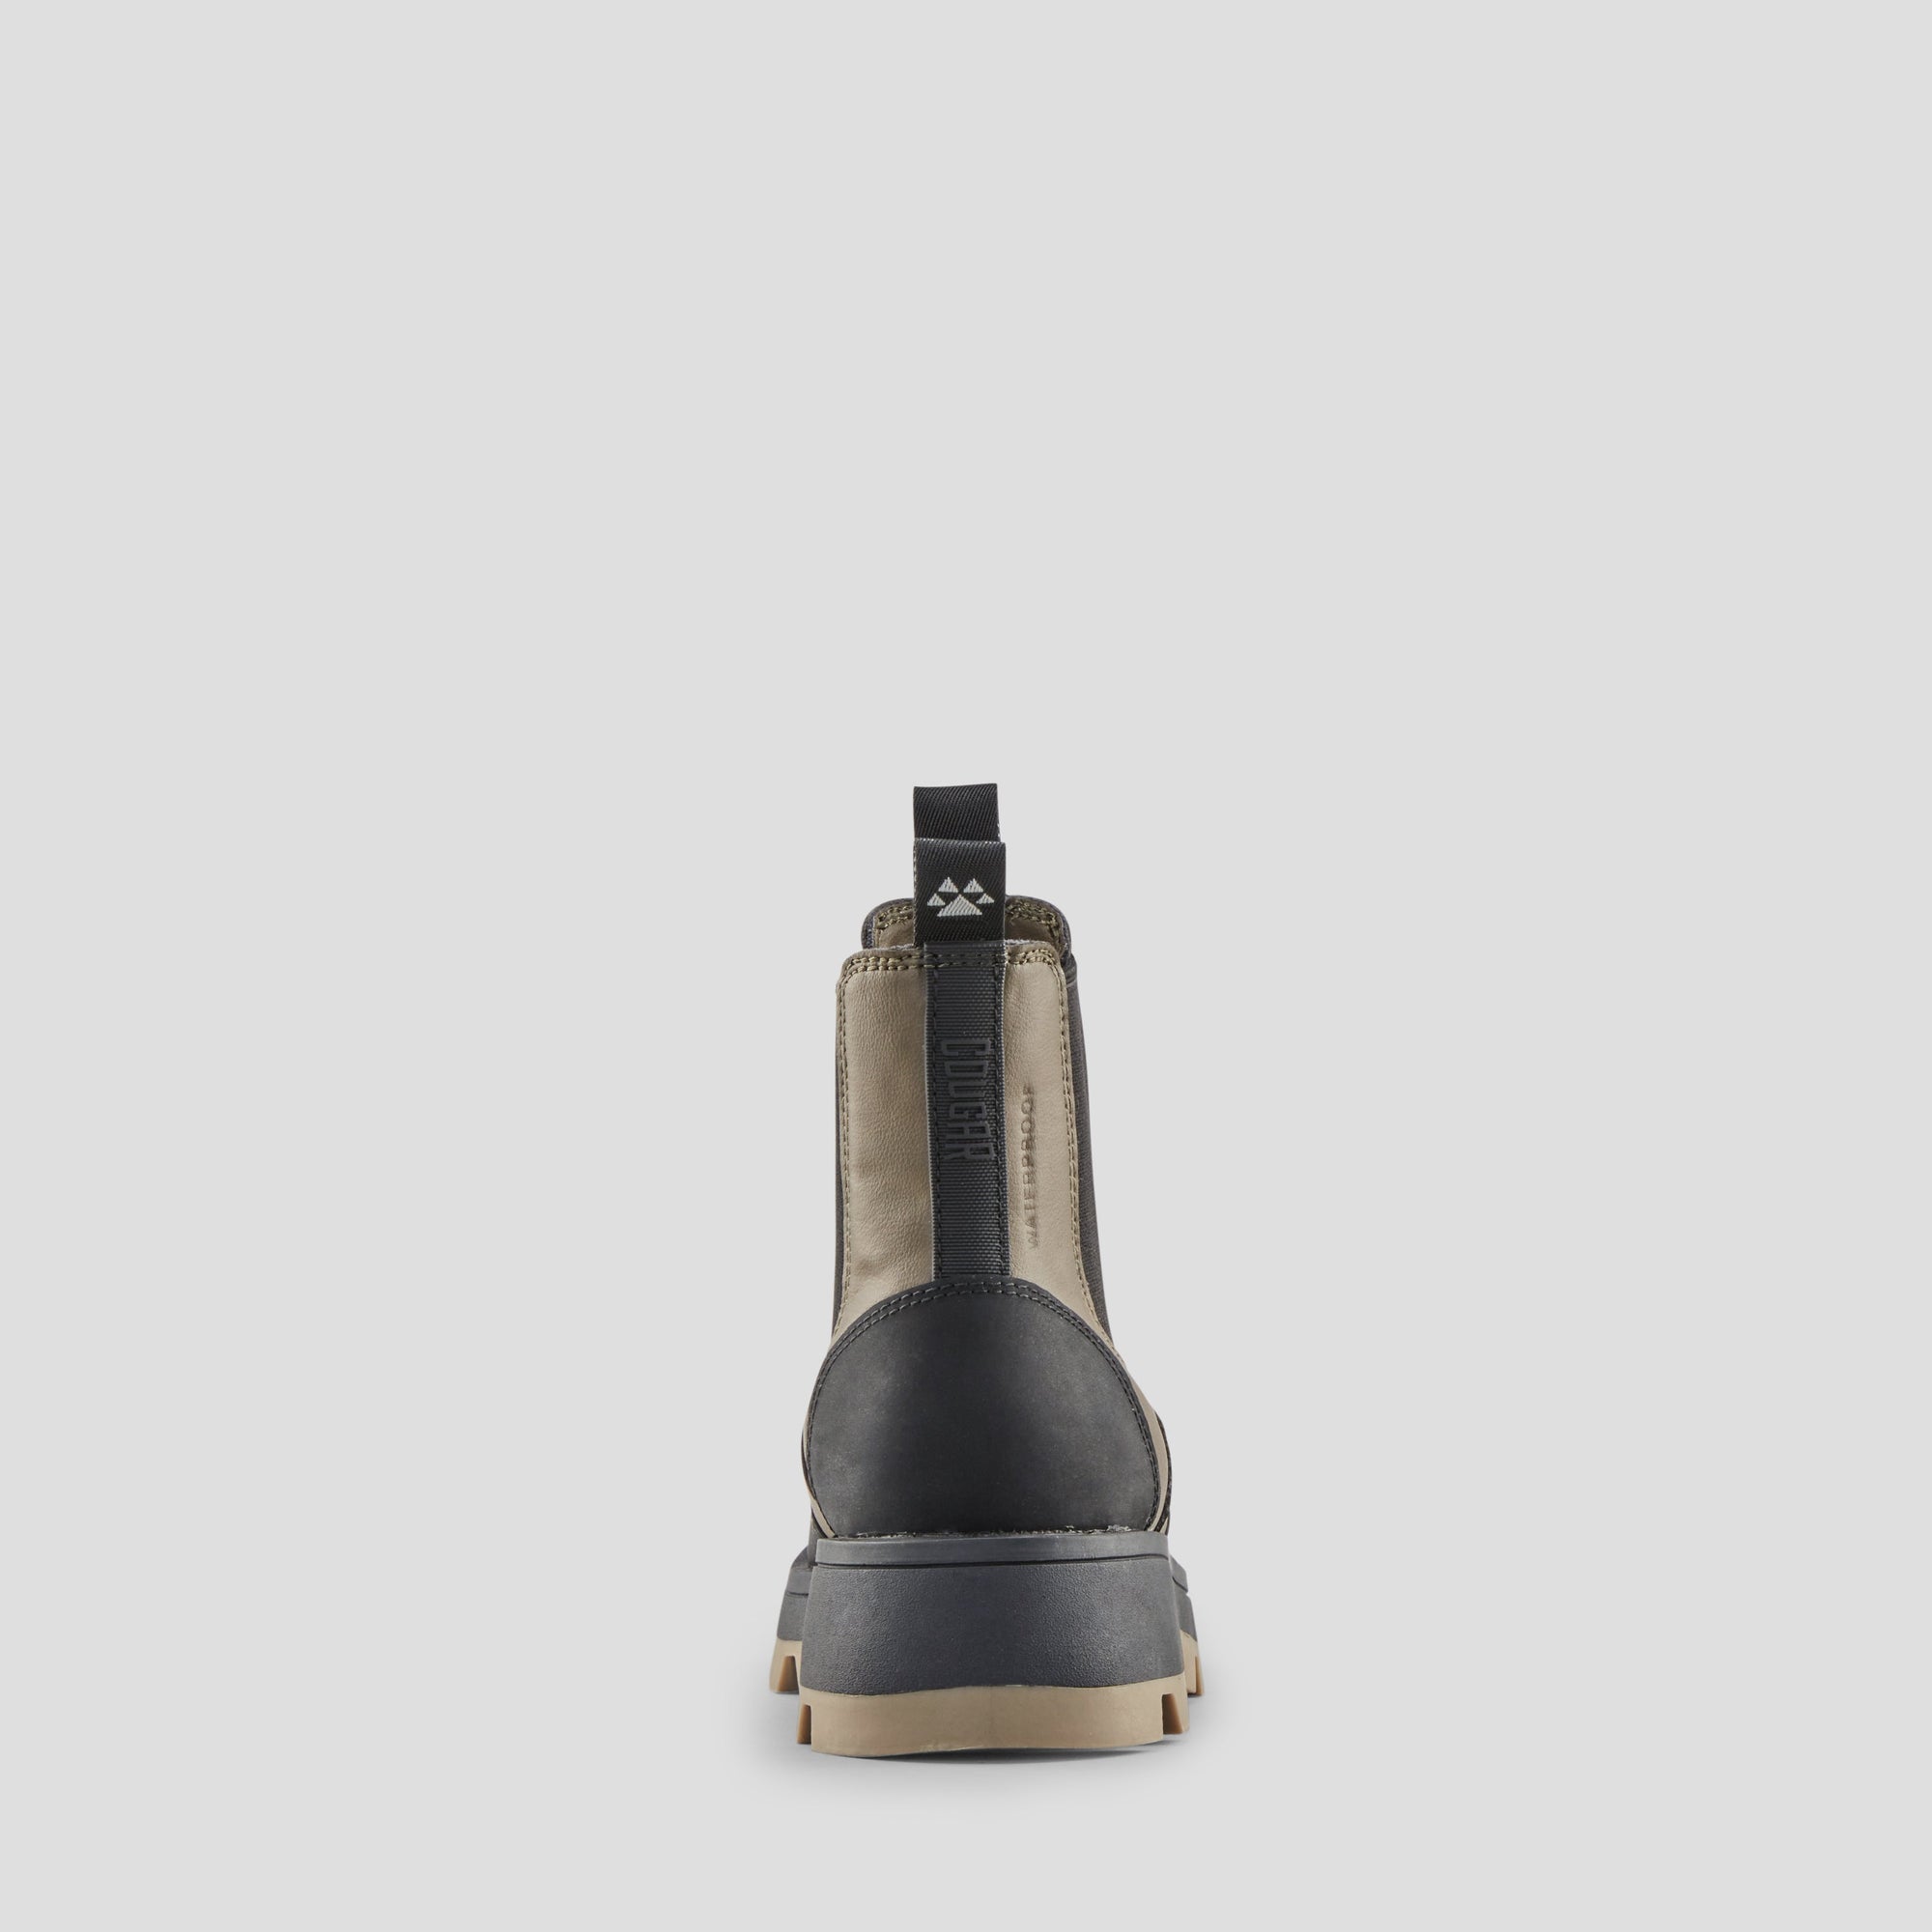 Shani K - Botte imperméable en cuir synthétique (Junior) - Colour Loden